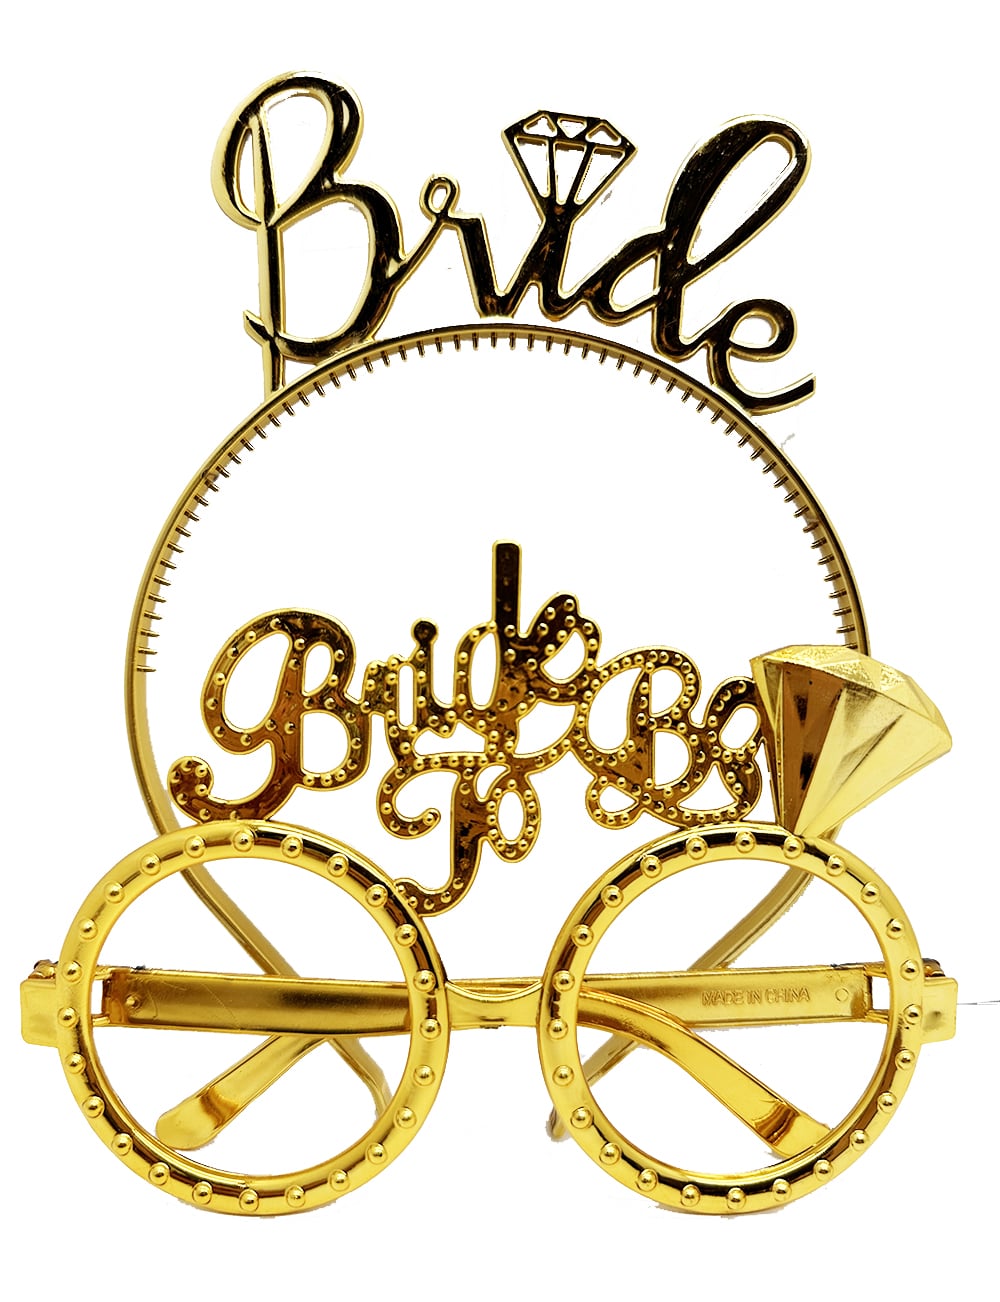 Bride Yazılı Taç ve Bride To Be Yazılı Gözlük Seti Altın Renk  (Lisinya)